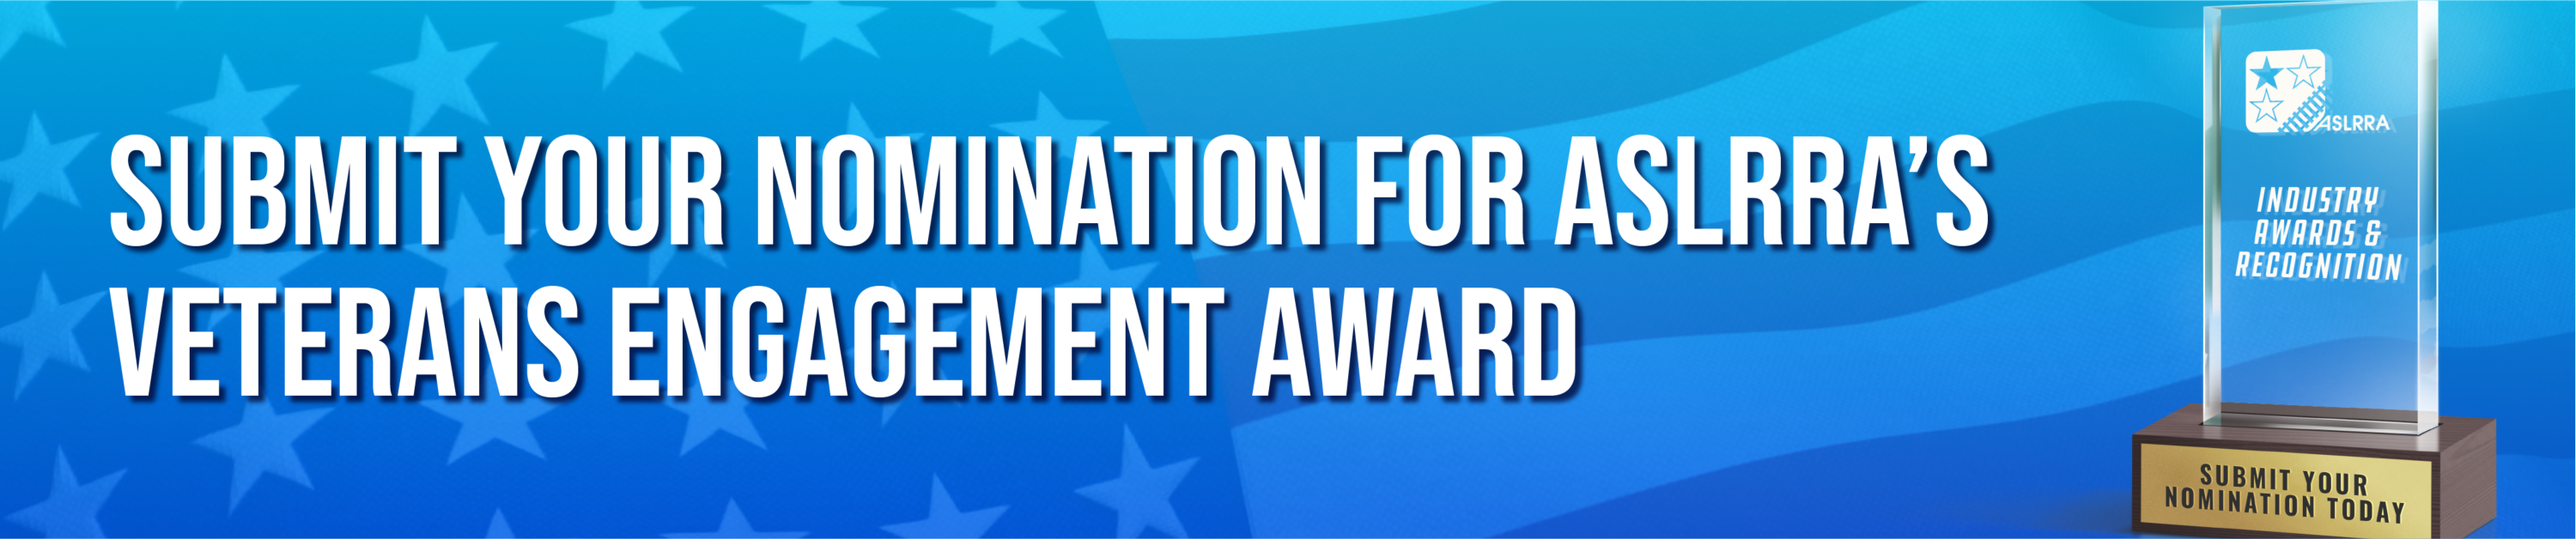 ASLRRA Veterans Award Nomination